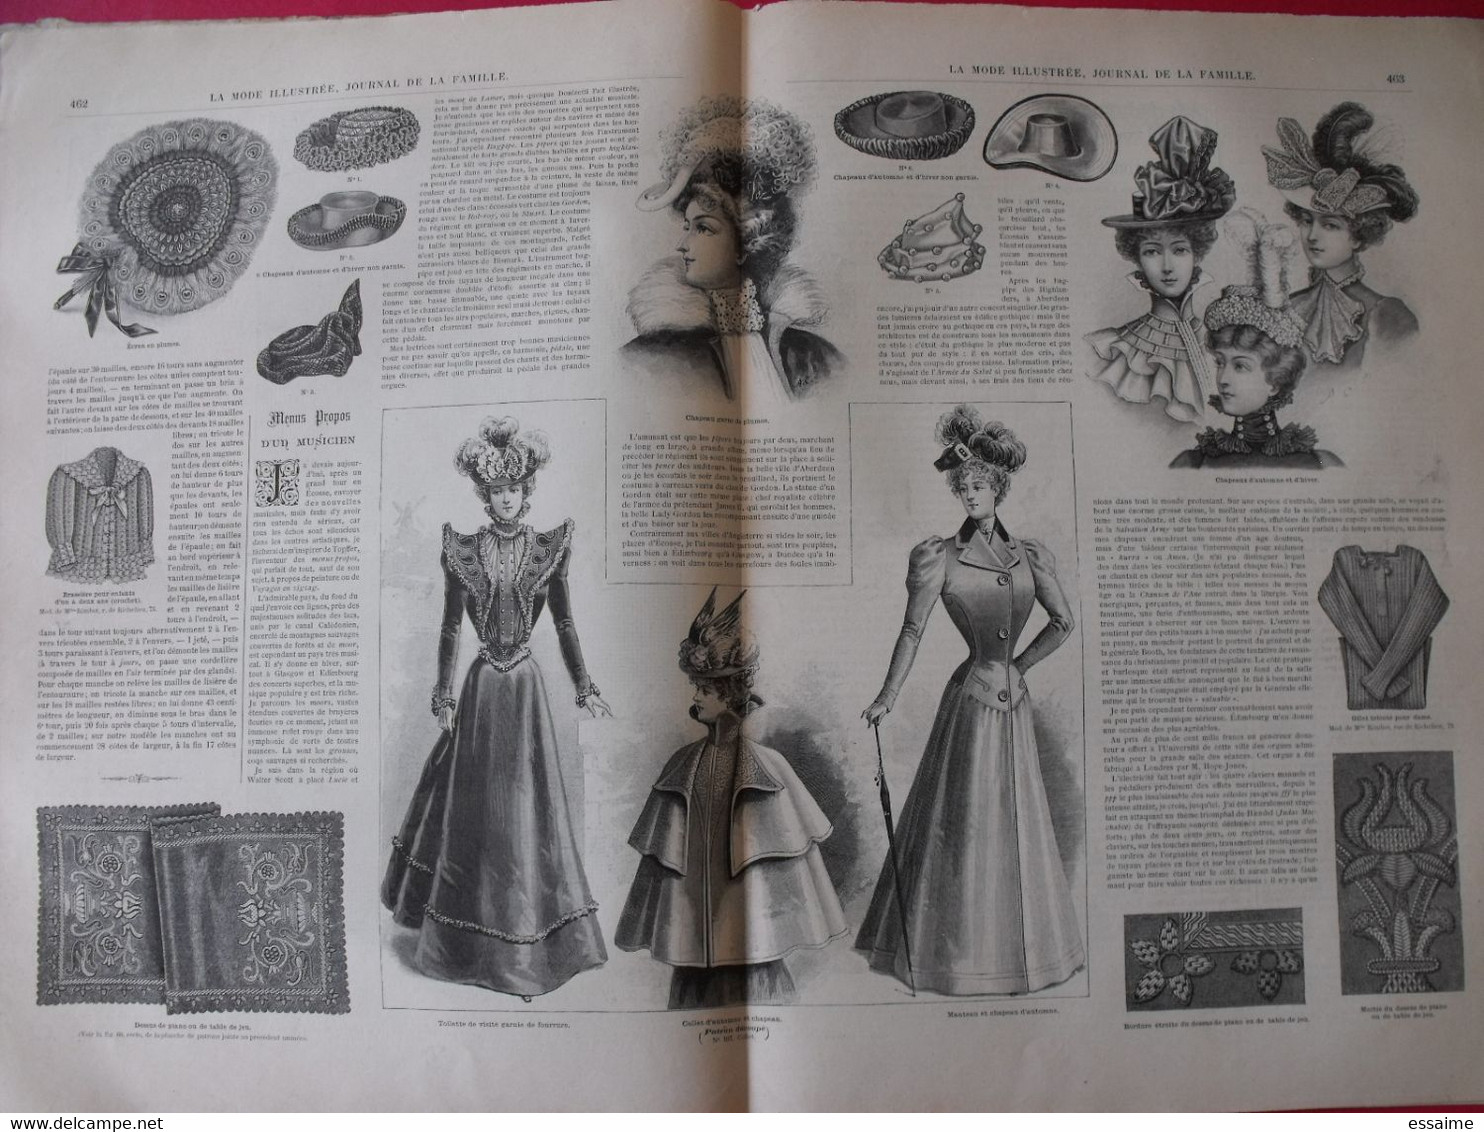 4 Revues La Mode Illustrée, Journal De La Famille.  N° 36,37,38,39 De 1898. Couverture En Couleur. Jolies Gravures - Fashion